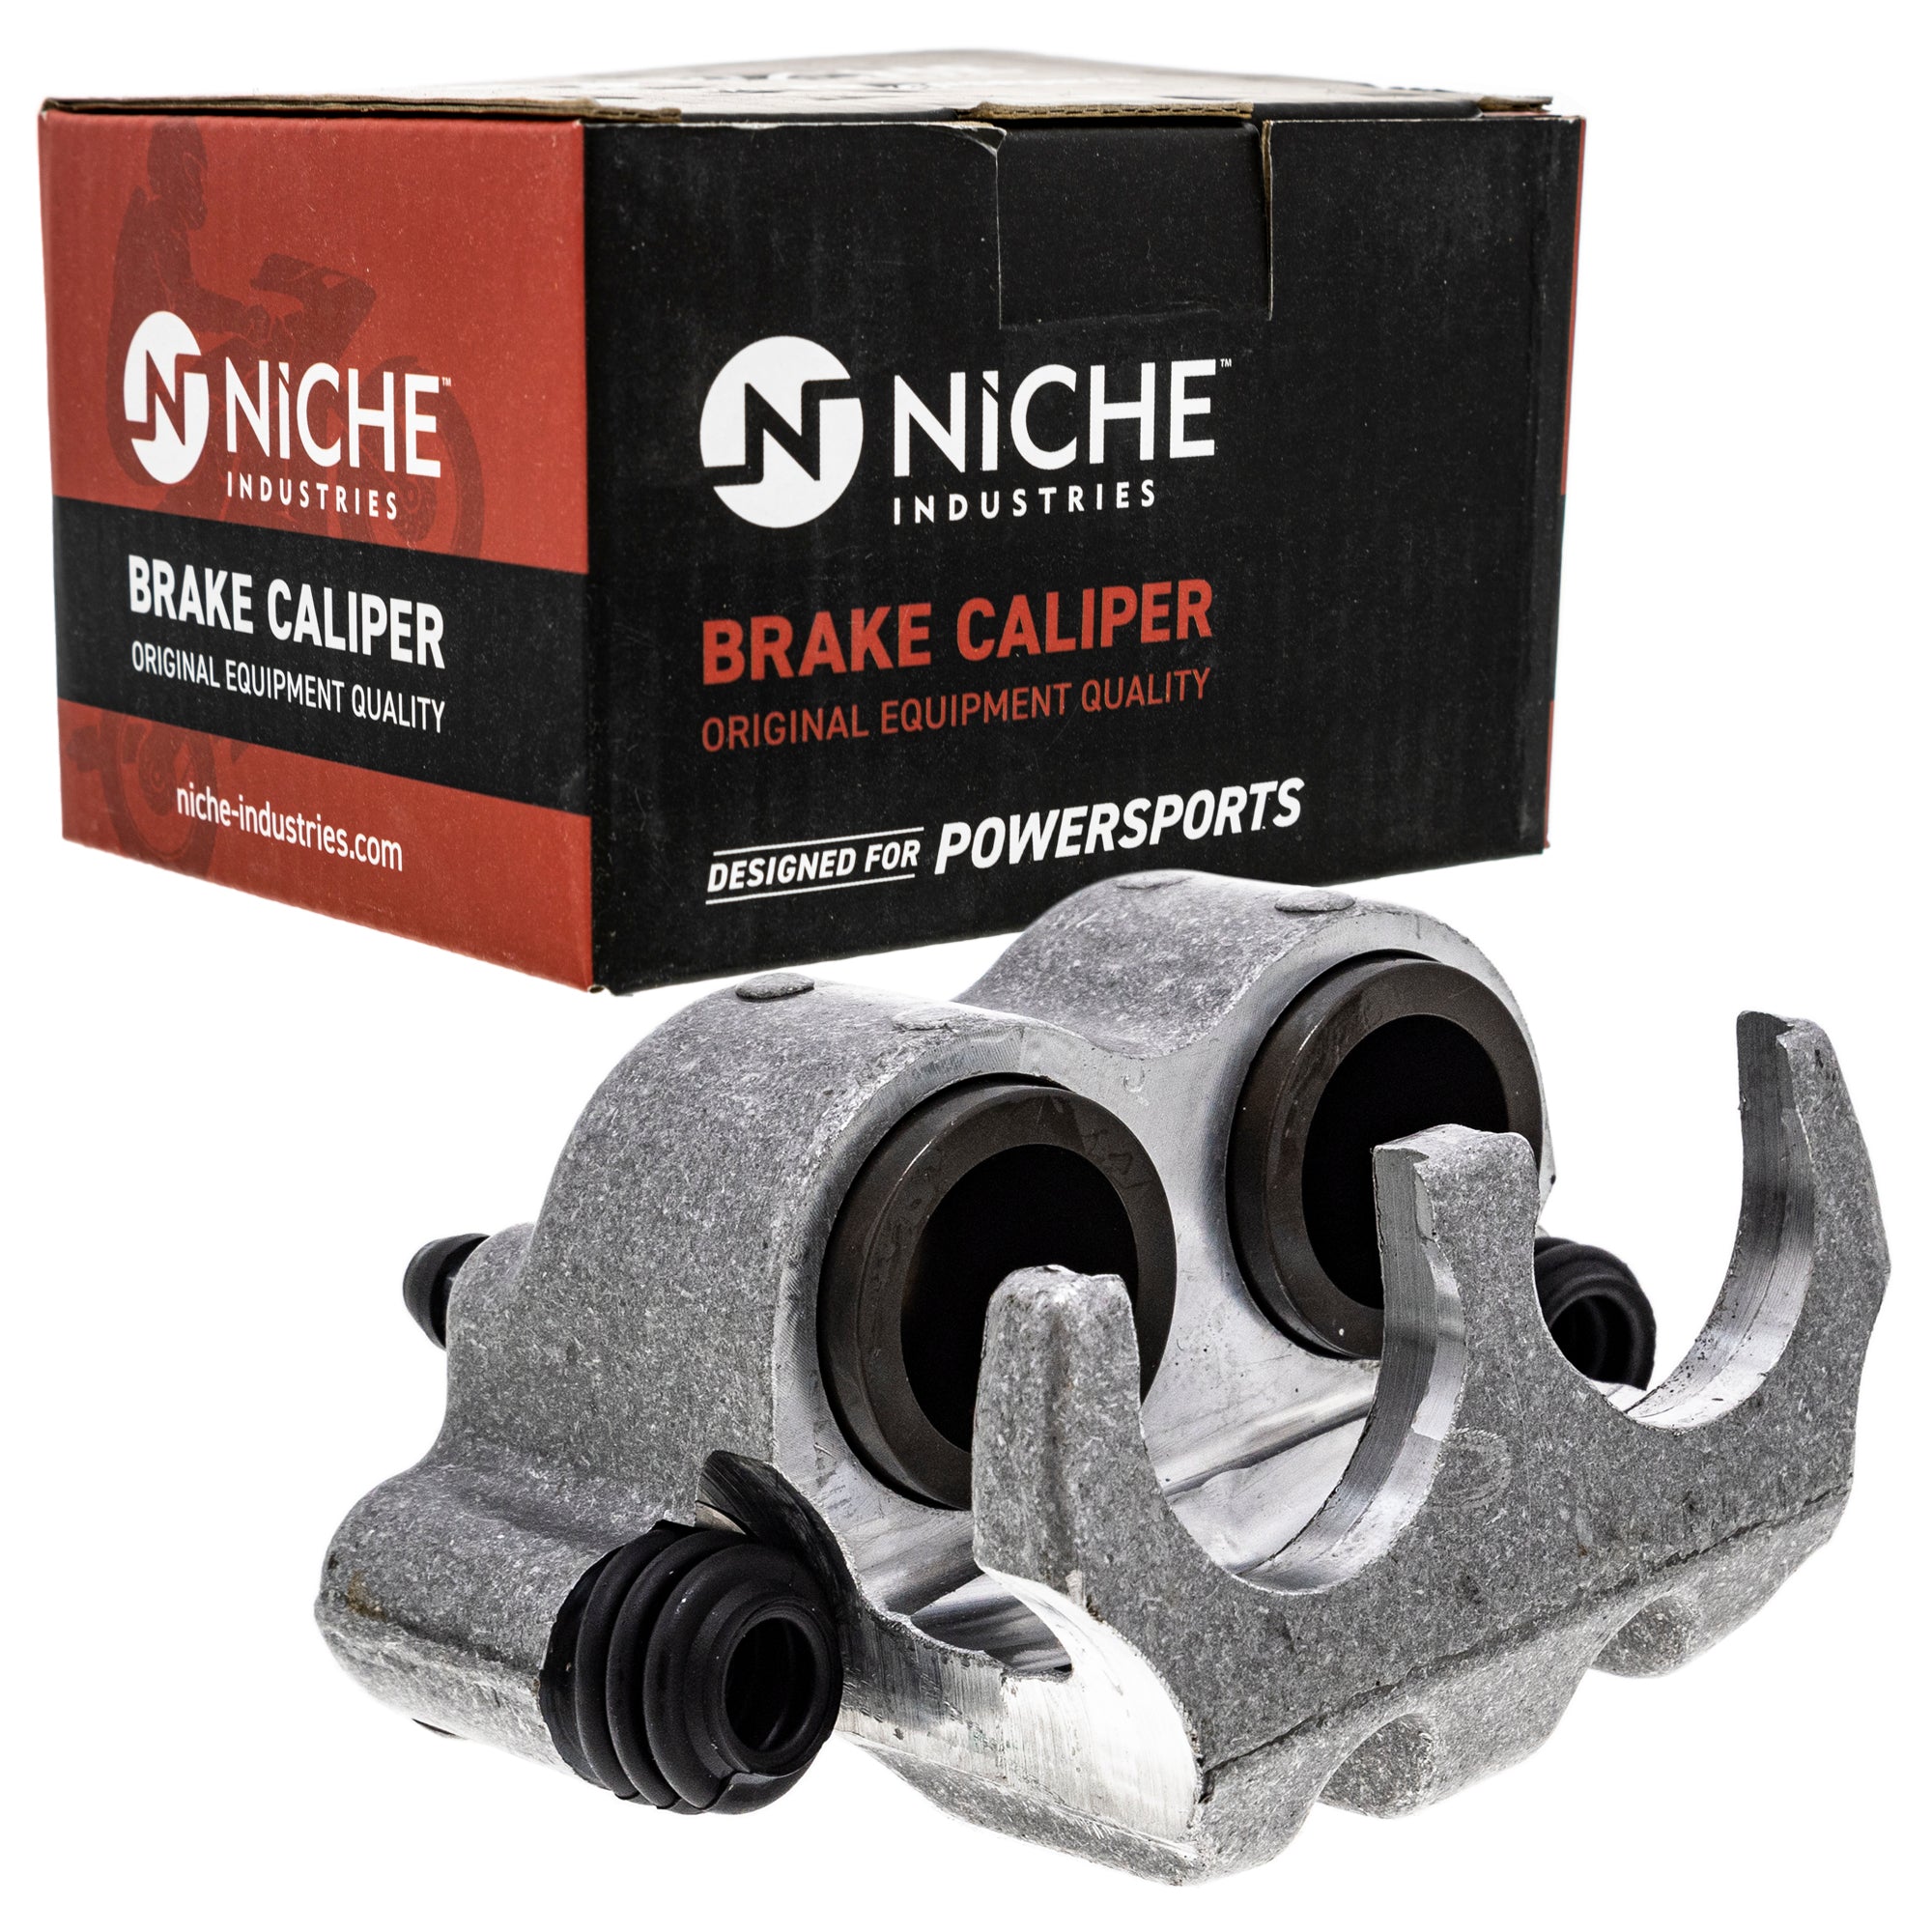 NICHE MK1001251 Brake Caliper Kit